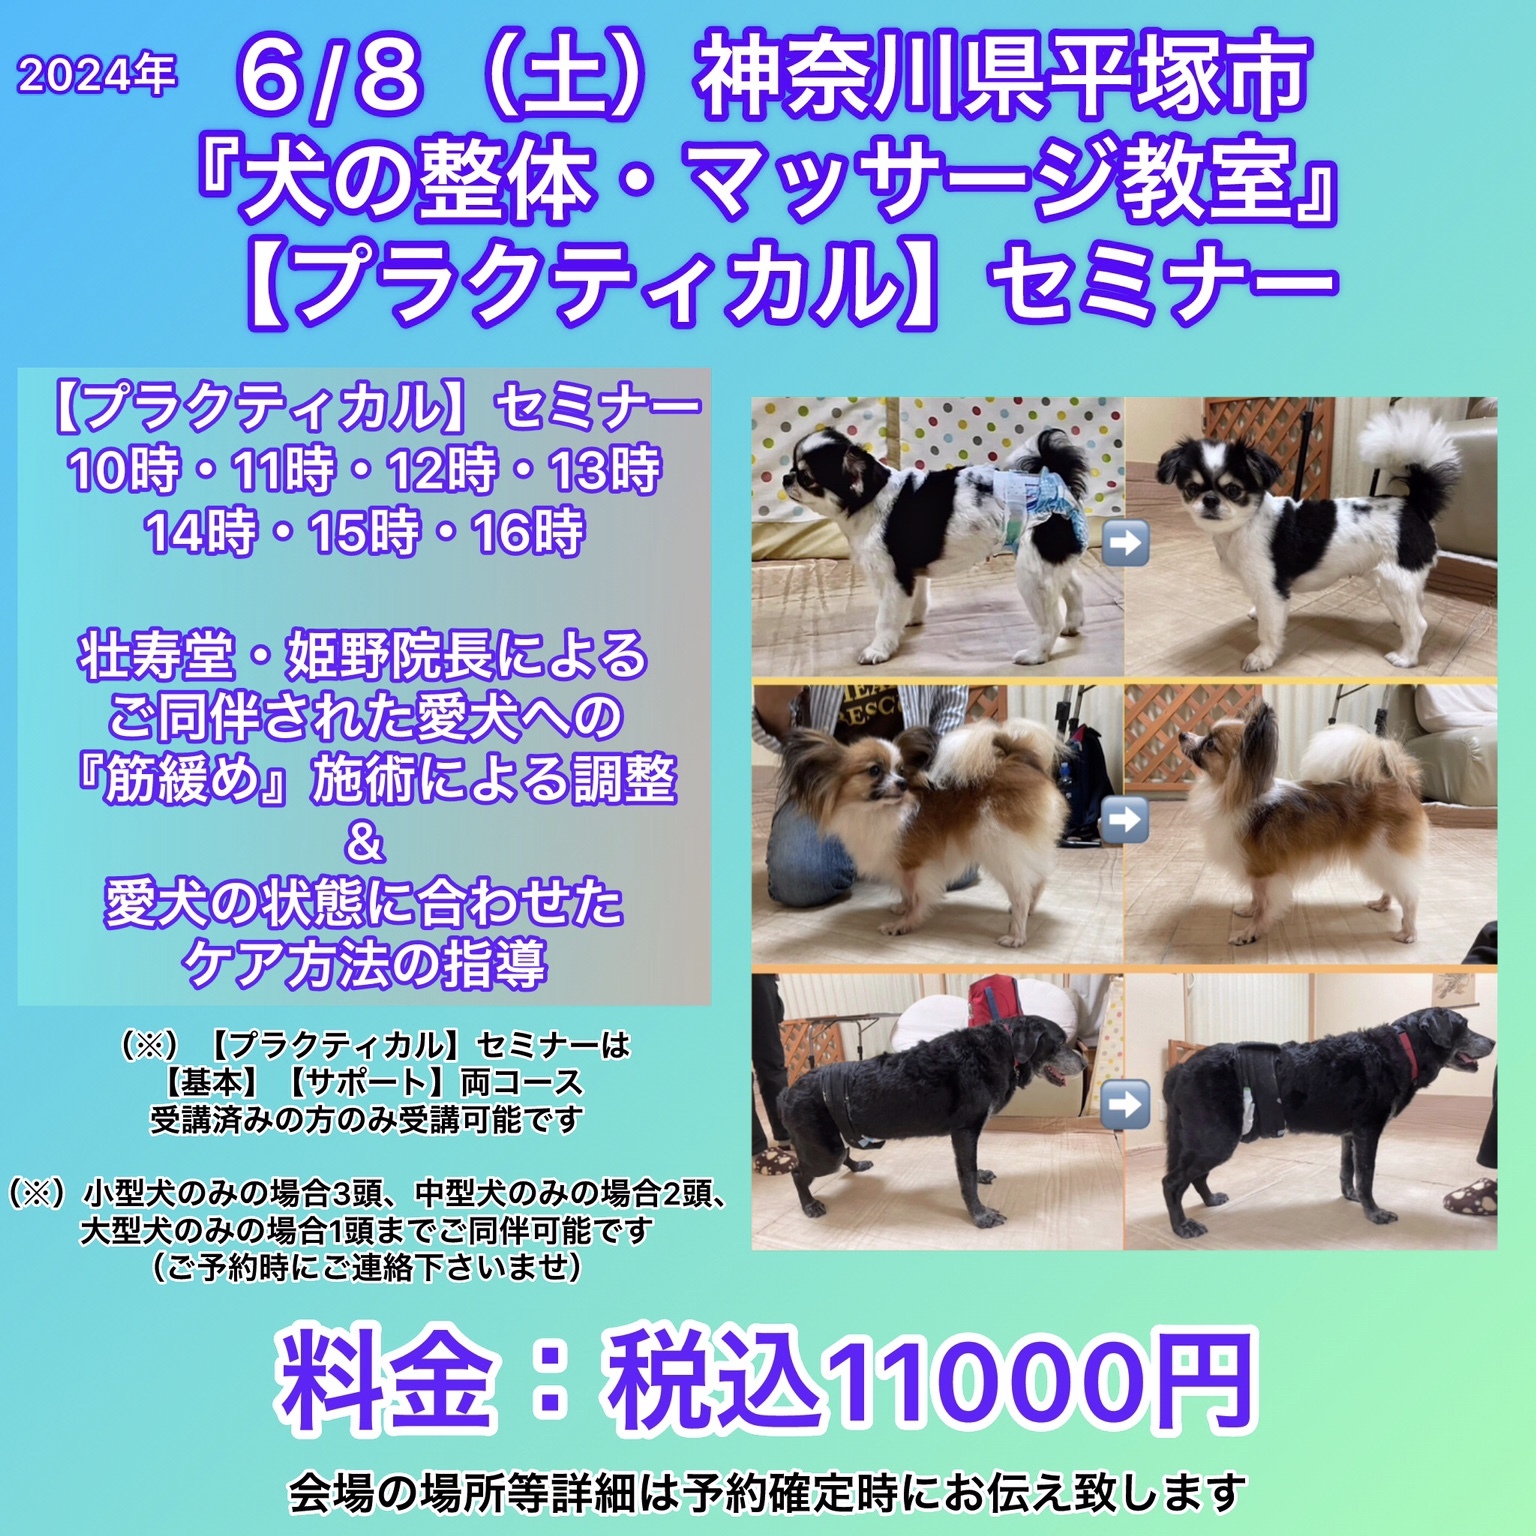 神奈川県犬の整体マッサージセミナー告知